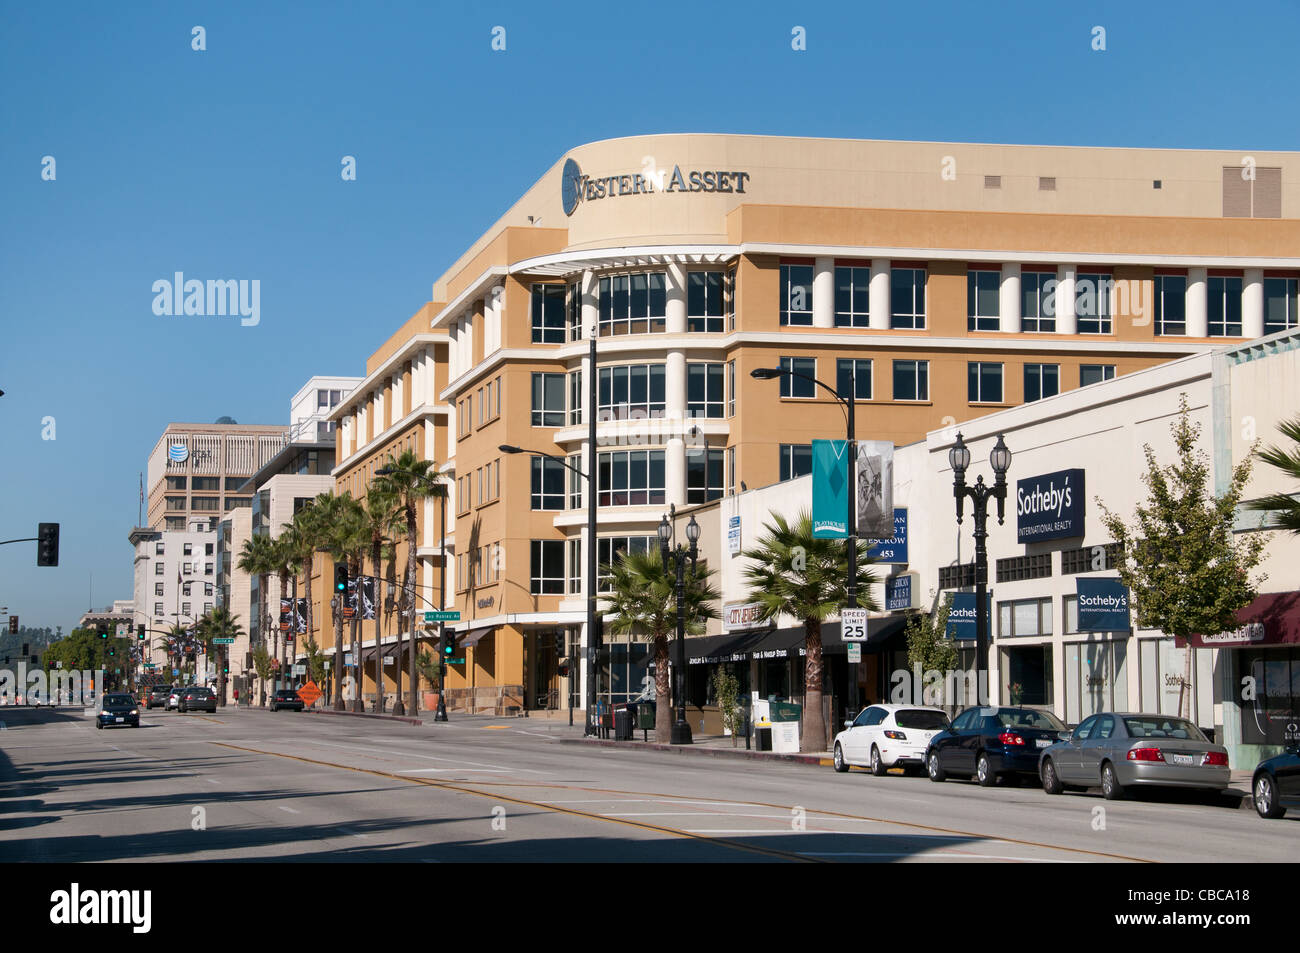 Westlichen Asset Pasadena Kalifornien USA Los Angeles Stockfoto